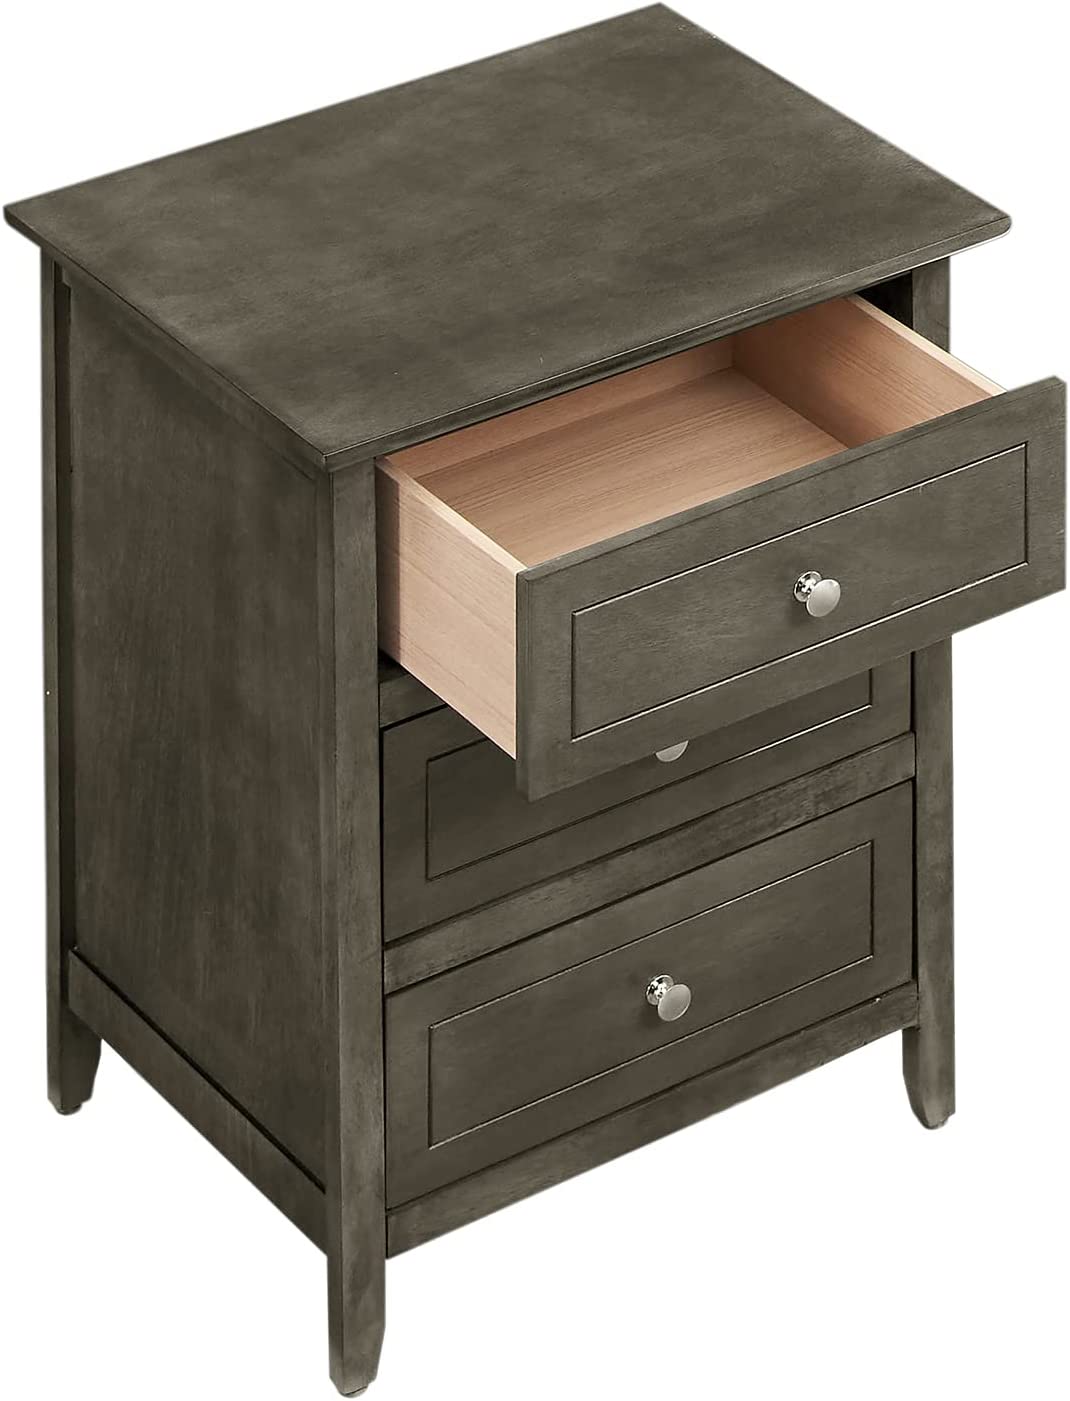 Glory Furniture 3 Drawer Nightstand, Gray